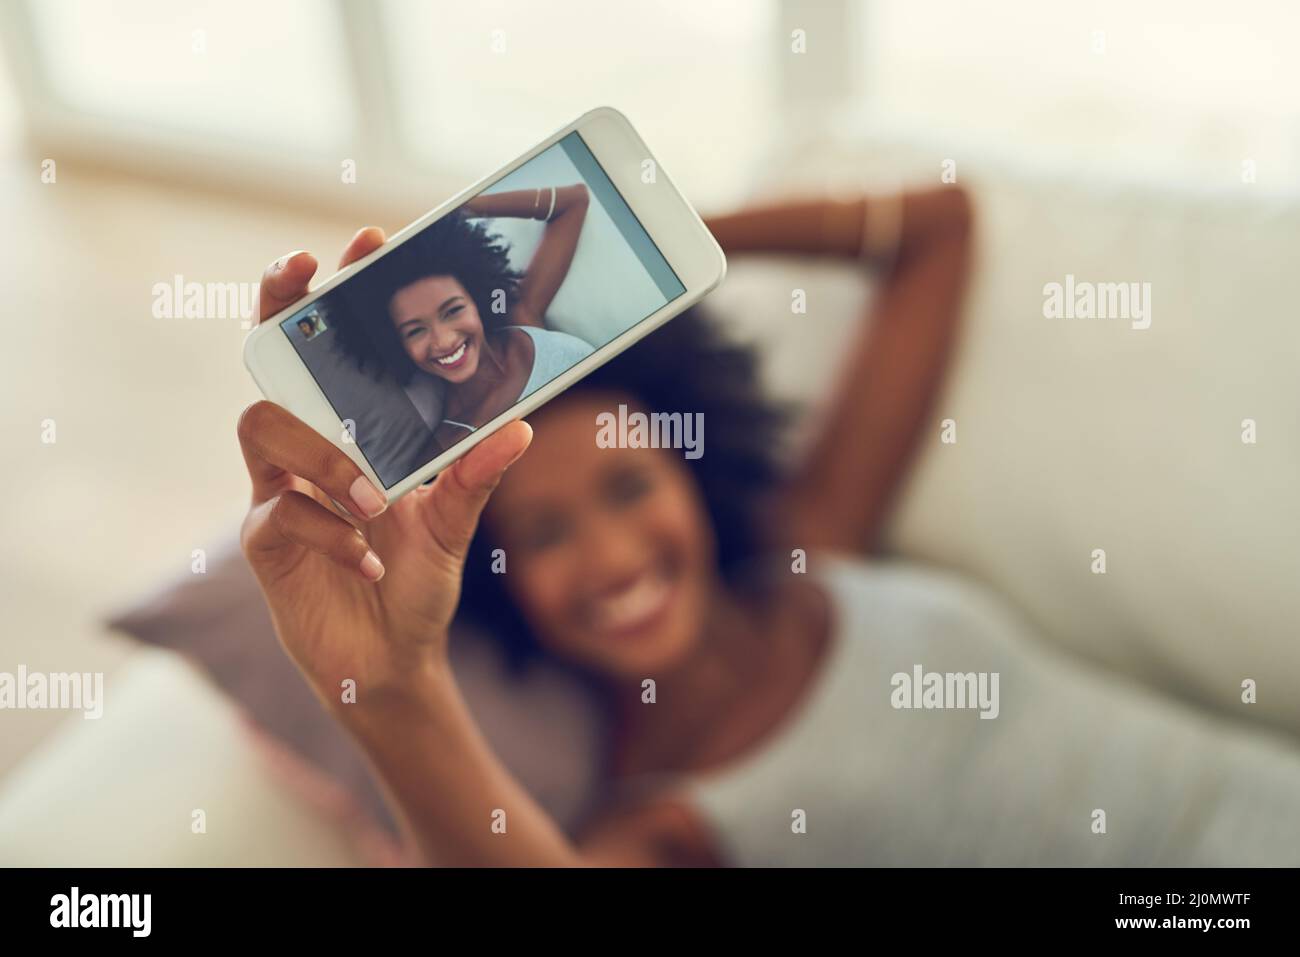 Glauben Sie an Ihr Selfie. Ausgeschnittene Aufnahme einer jungen Frau, die ein Foto von sich selbst macht. Stockfoto